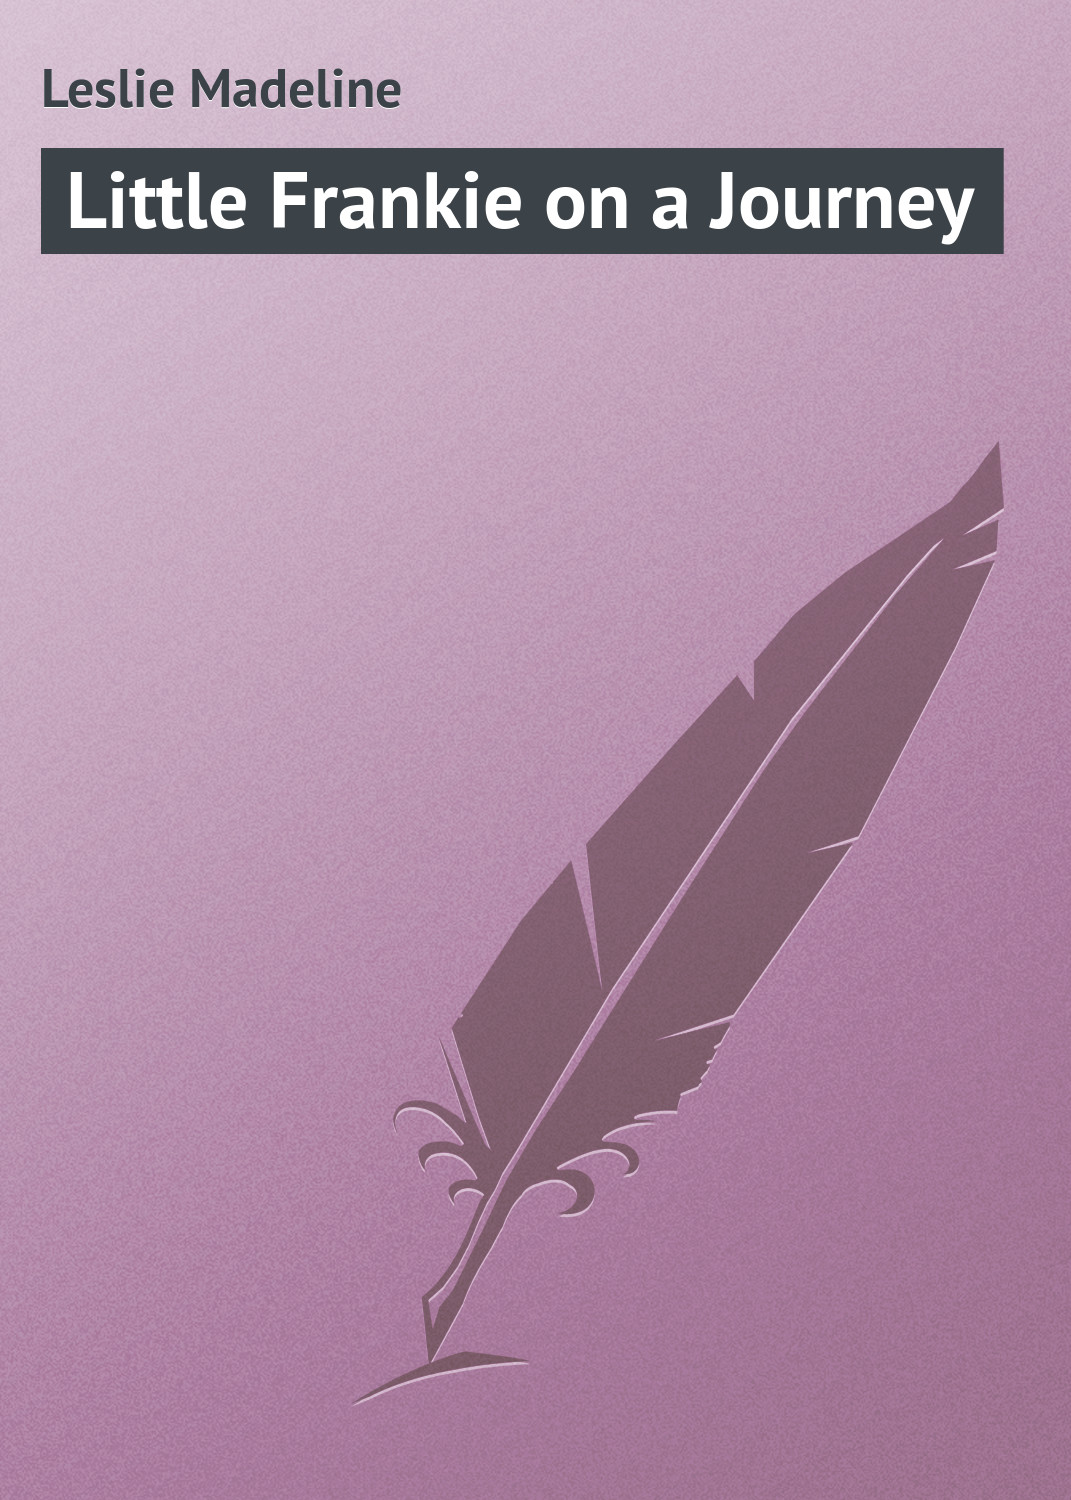 Книга Little Frankie on a Journey из серии , созданная Madeline Leslie, может относится к жанру Зарубежная классика, Зарубежные детские книги. Стоимость электронной книги Little Frankie on a Journey с идентификатором 23166827 составляет 5.99 руб.